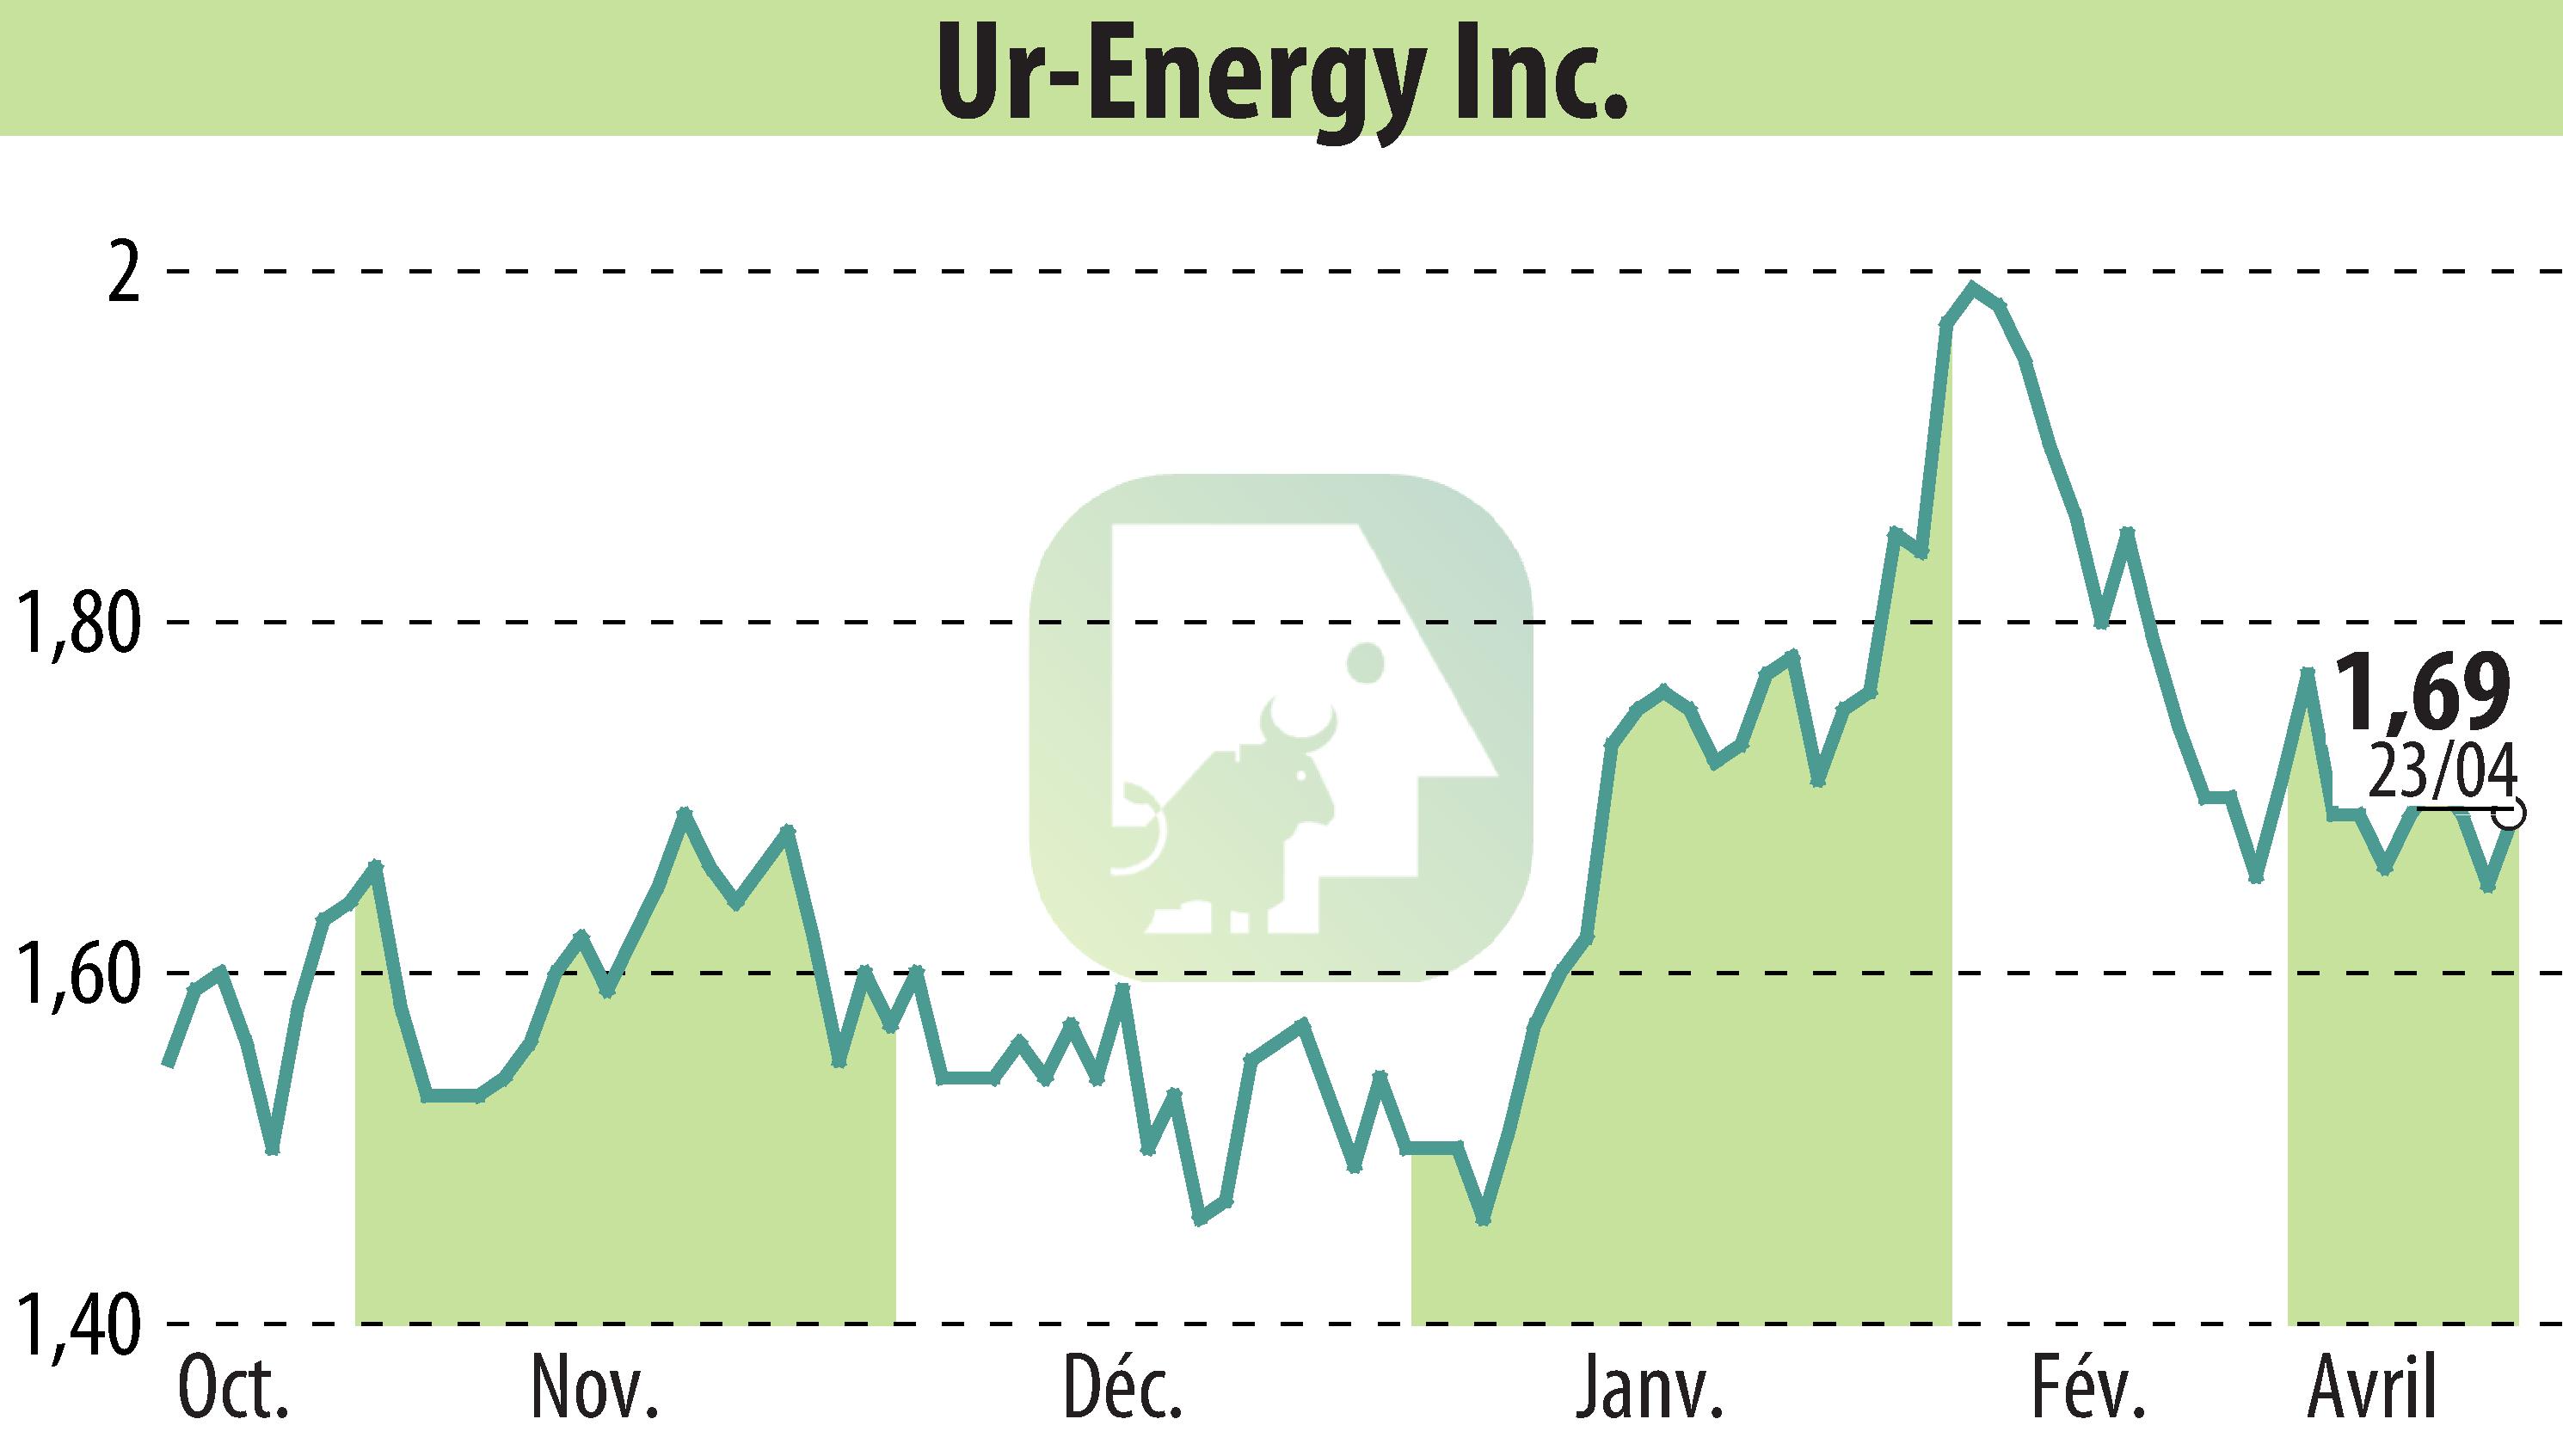 Graphique de l'évolution du cours de l'action Ur-Energy Inc. (EBR:URG).